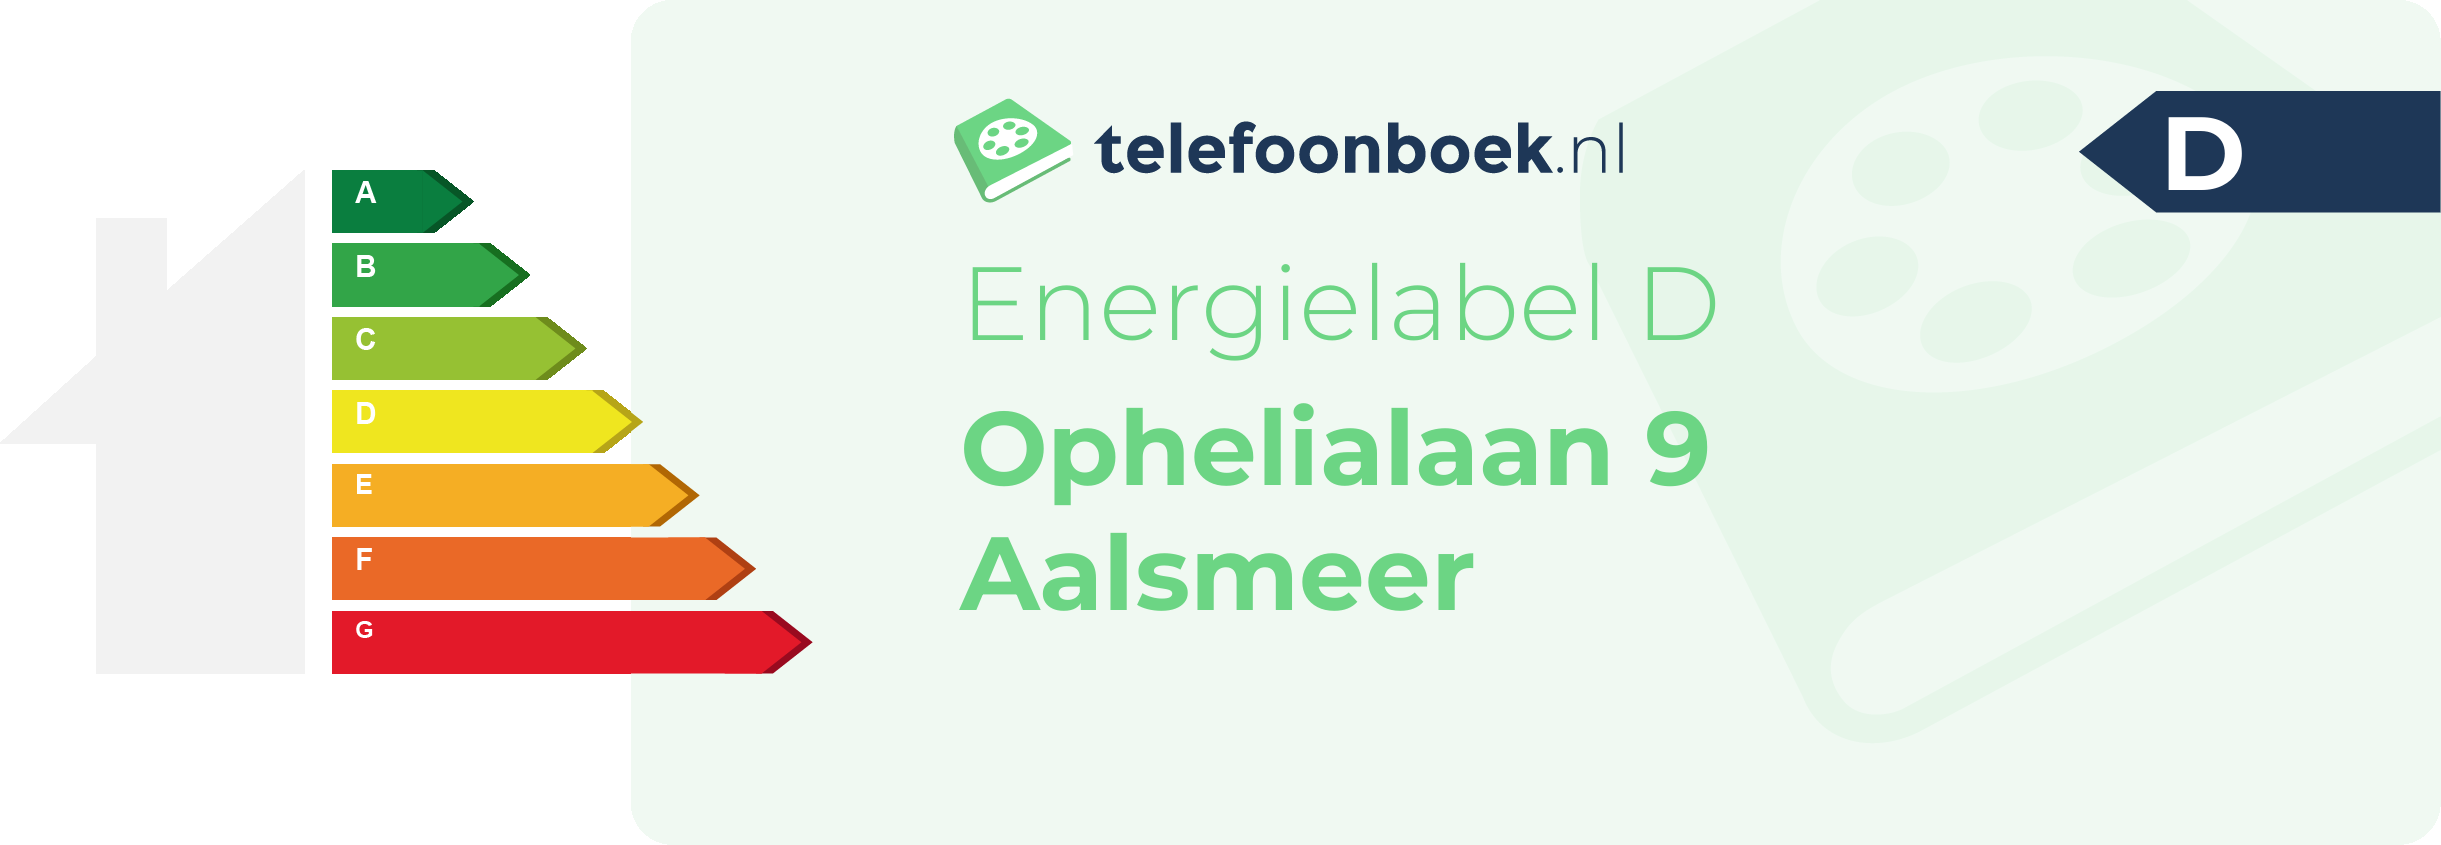 Energielabel Ophelialaan 9 Aalsmeer